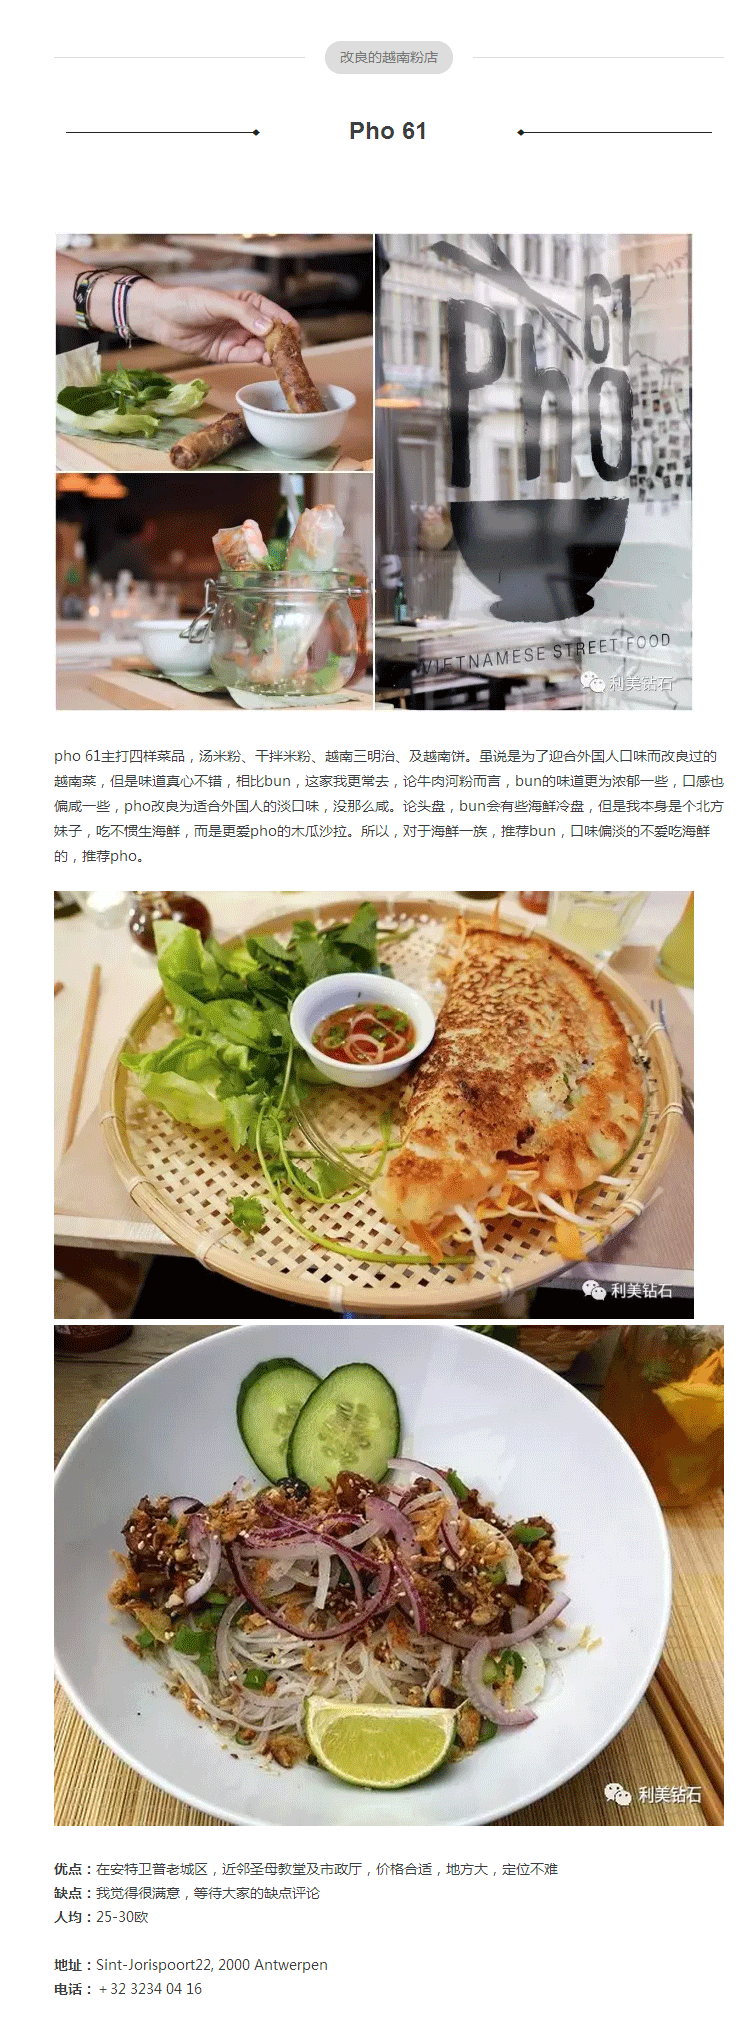 食在安特---亚洲篇之越南、泰国菜_02.gif